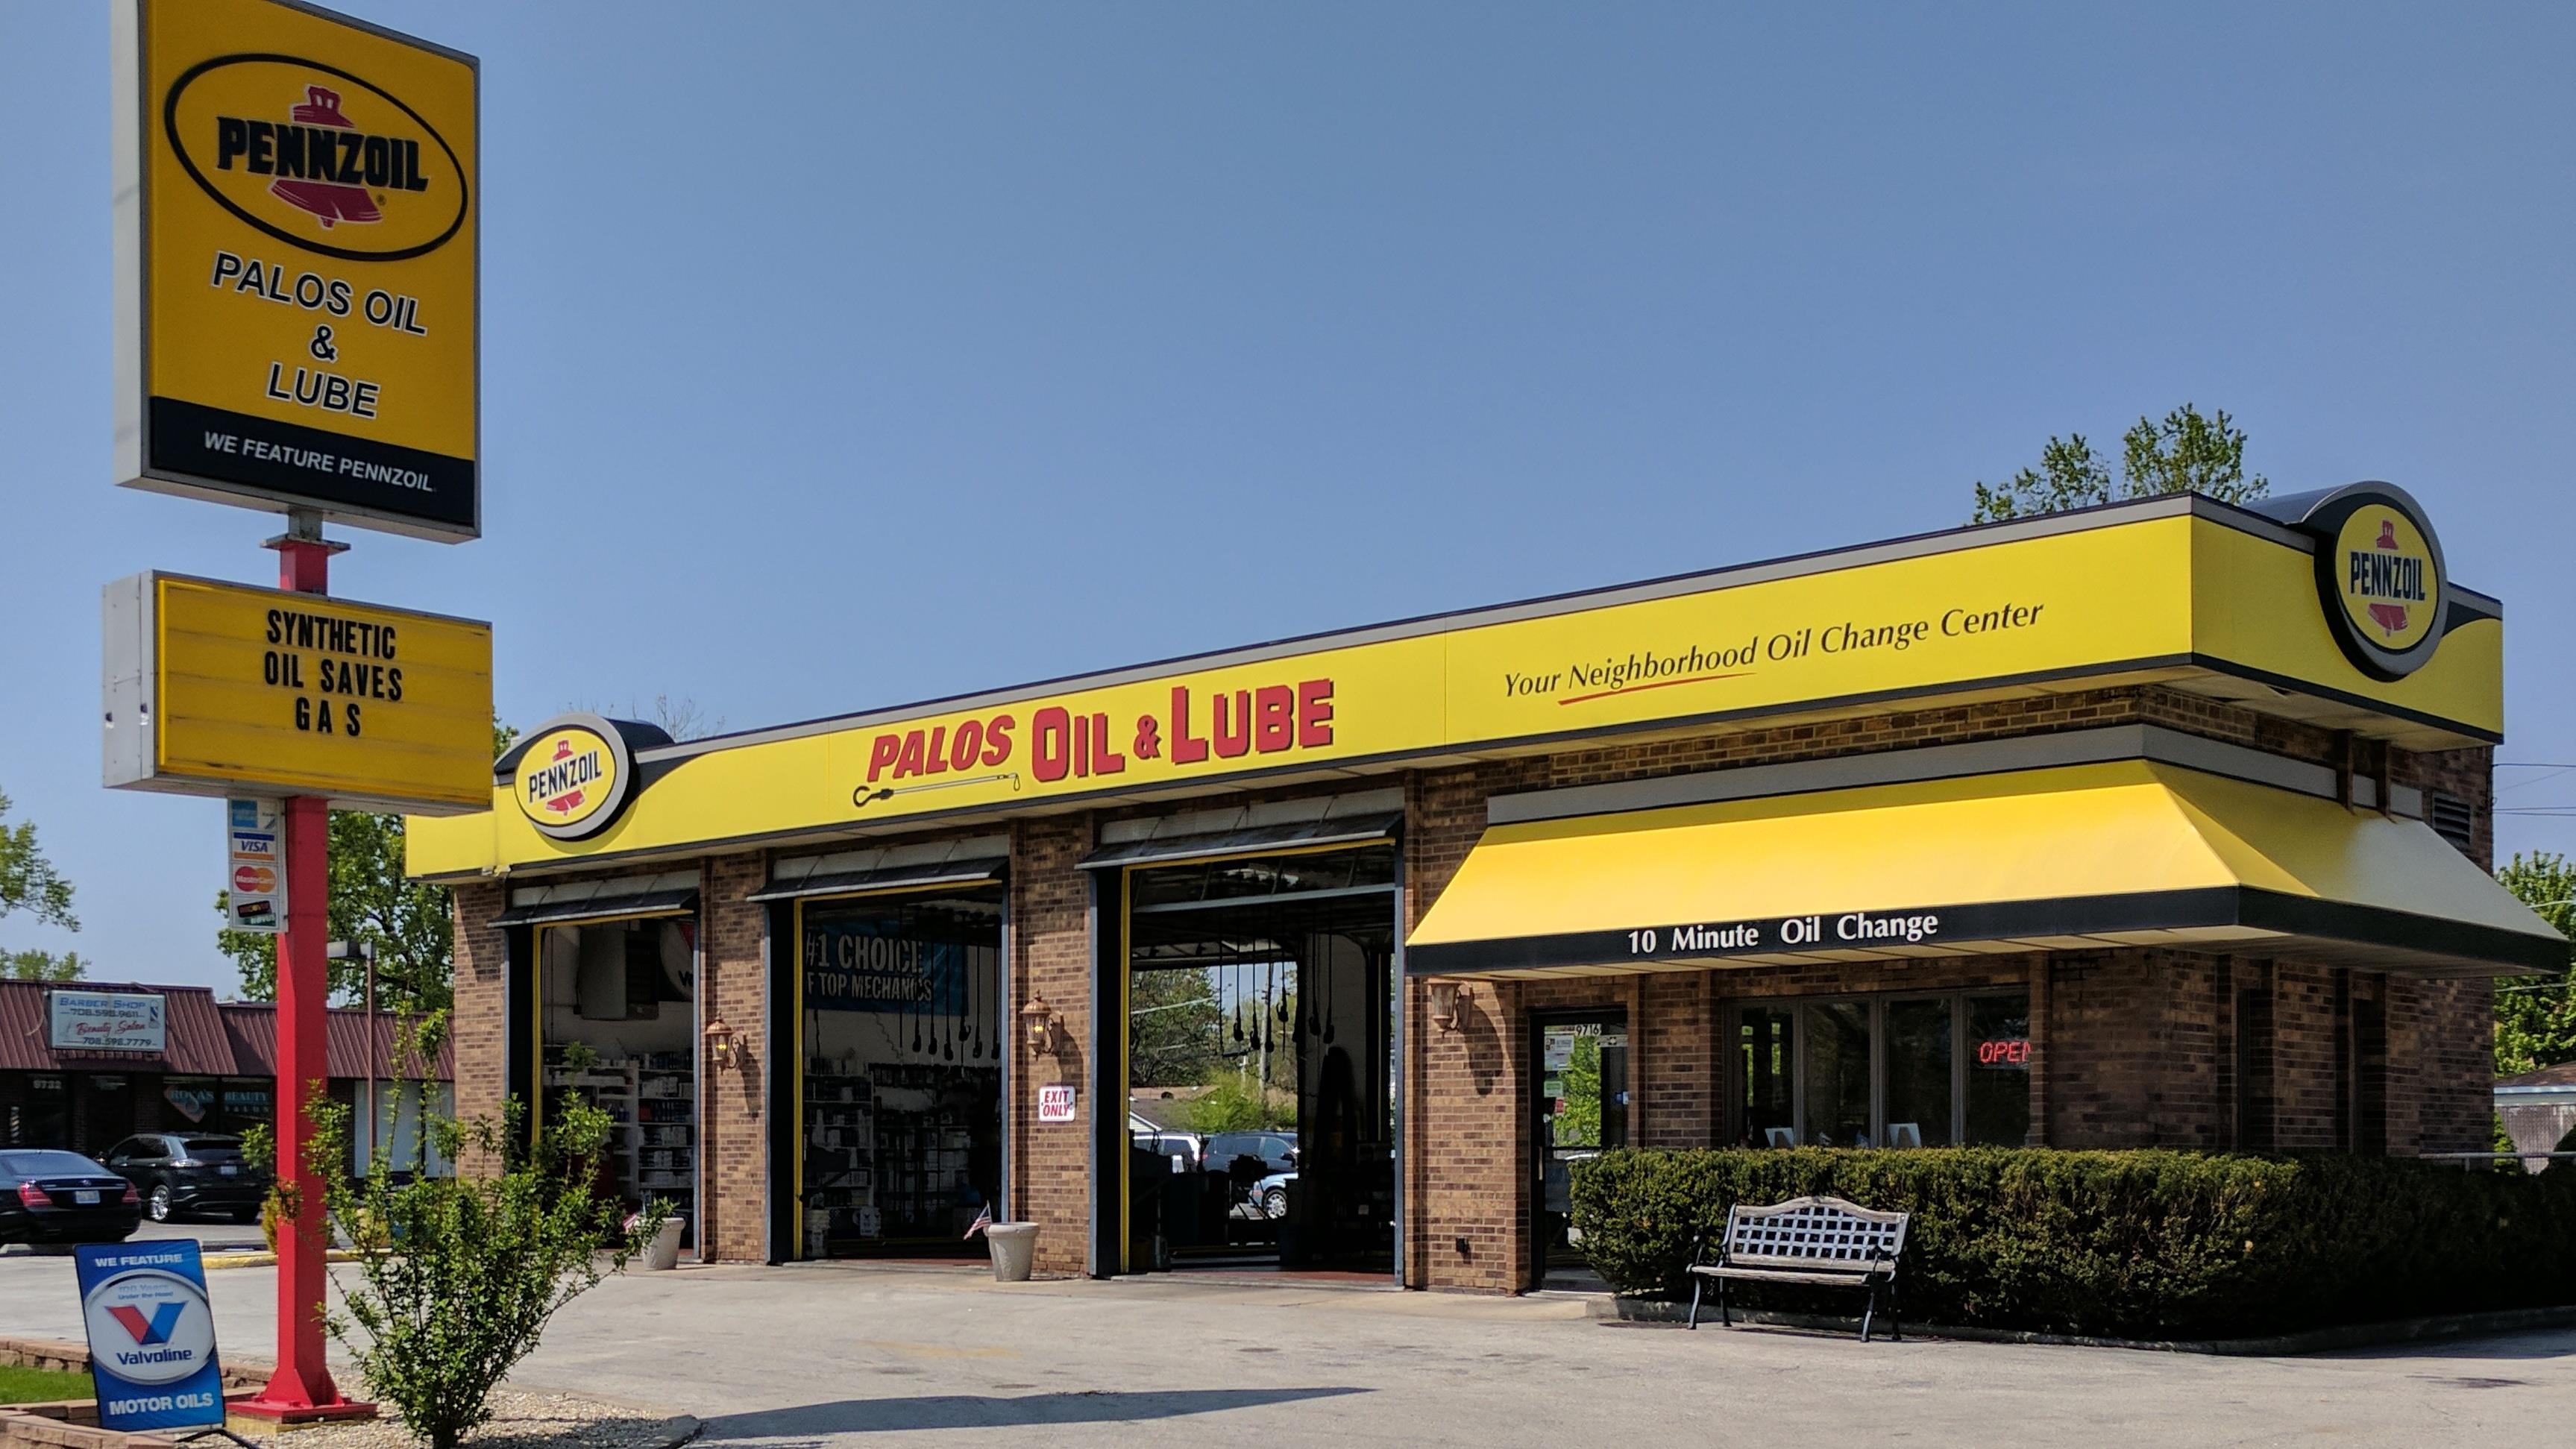 Palos Oil & Lube/Auto Oil/Lube                                                                                                                                                                                           